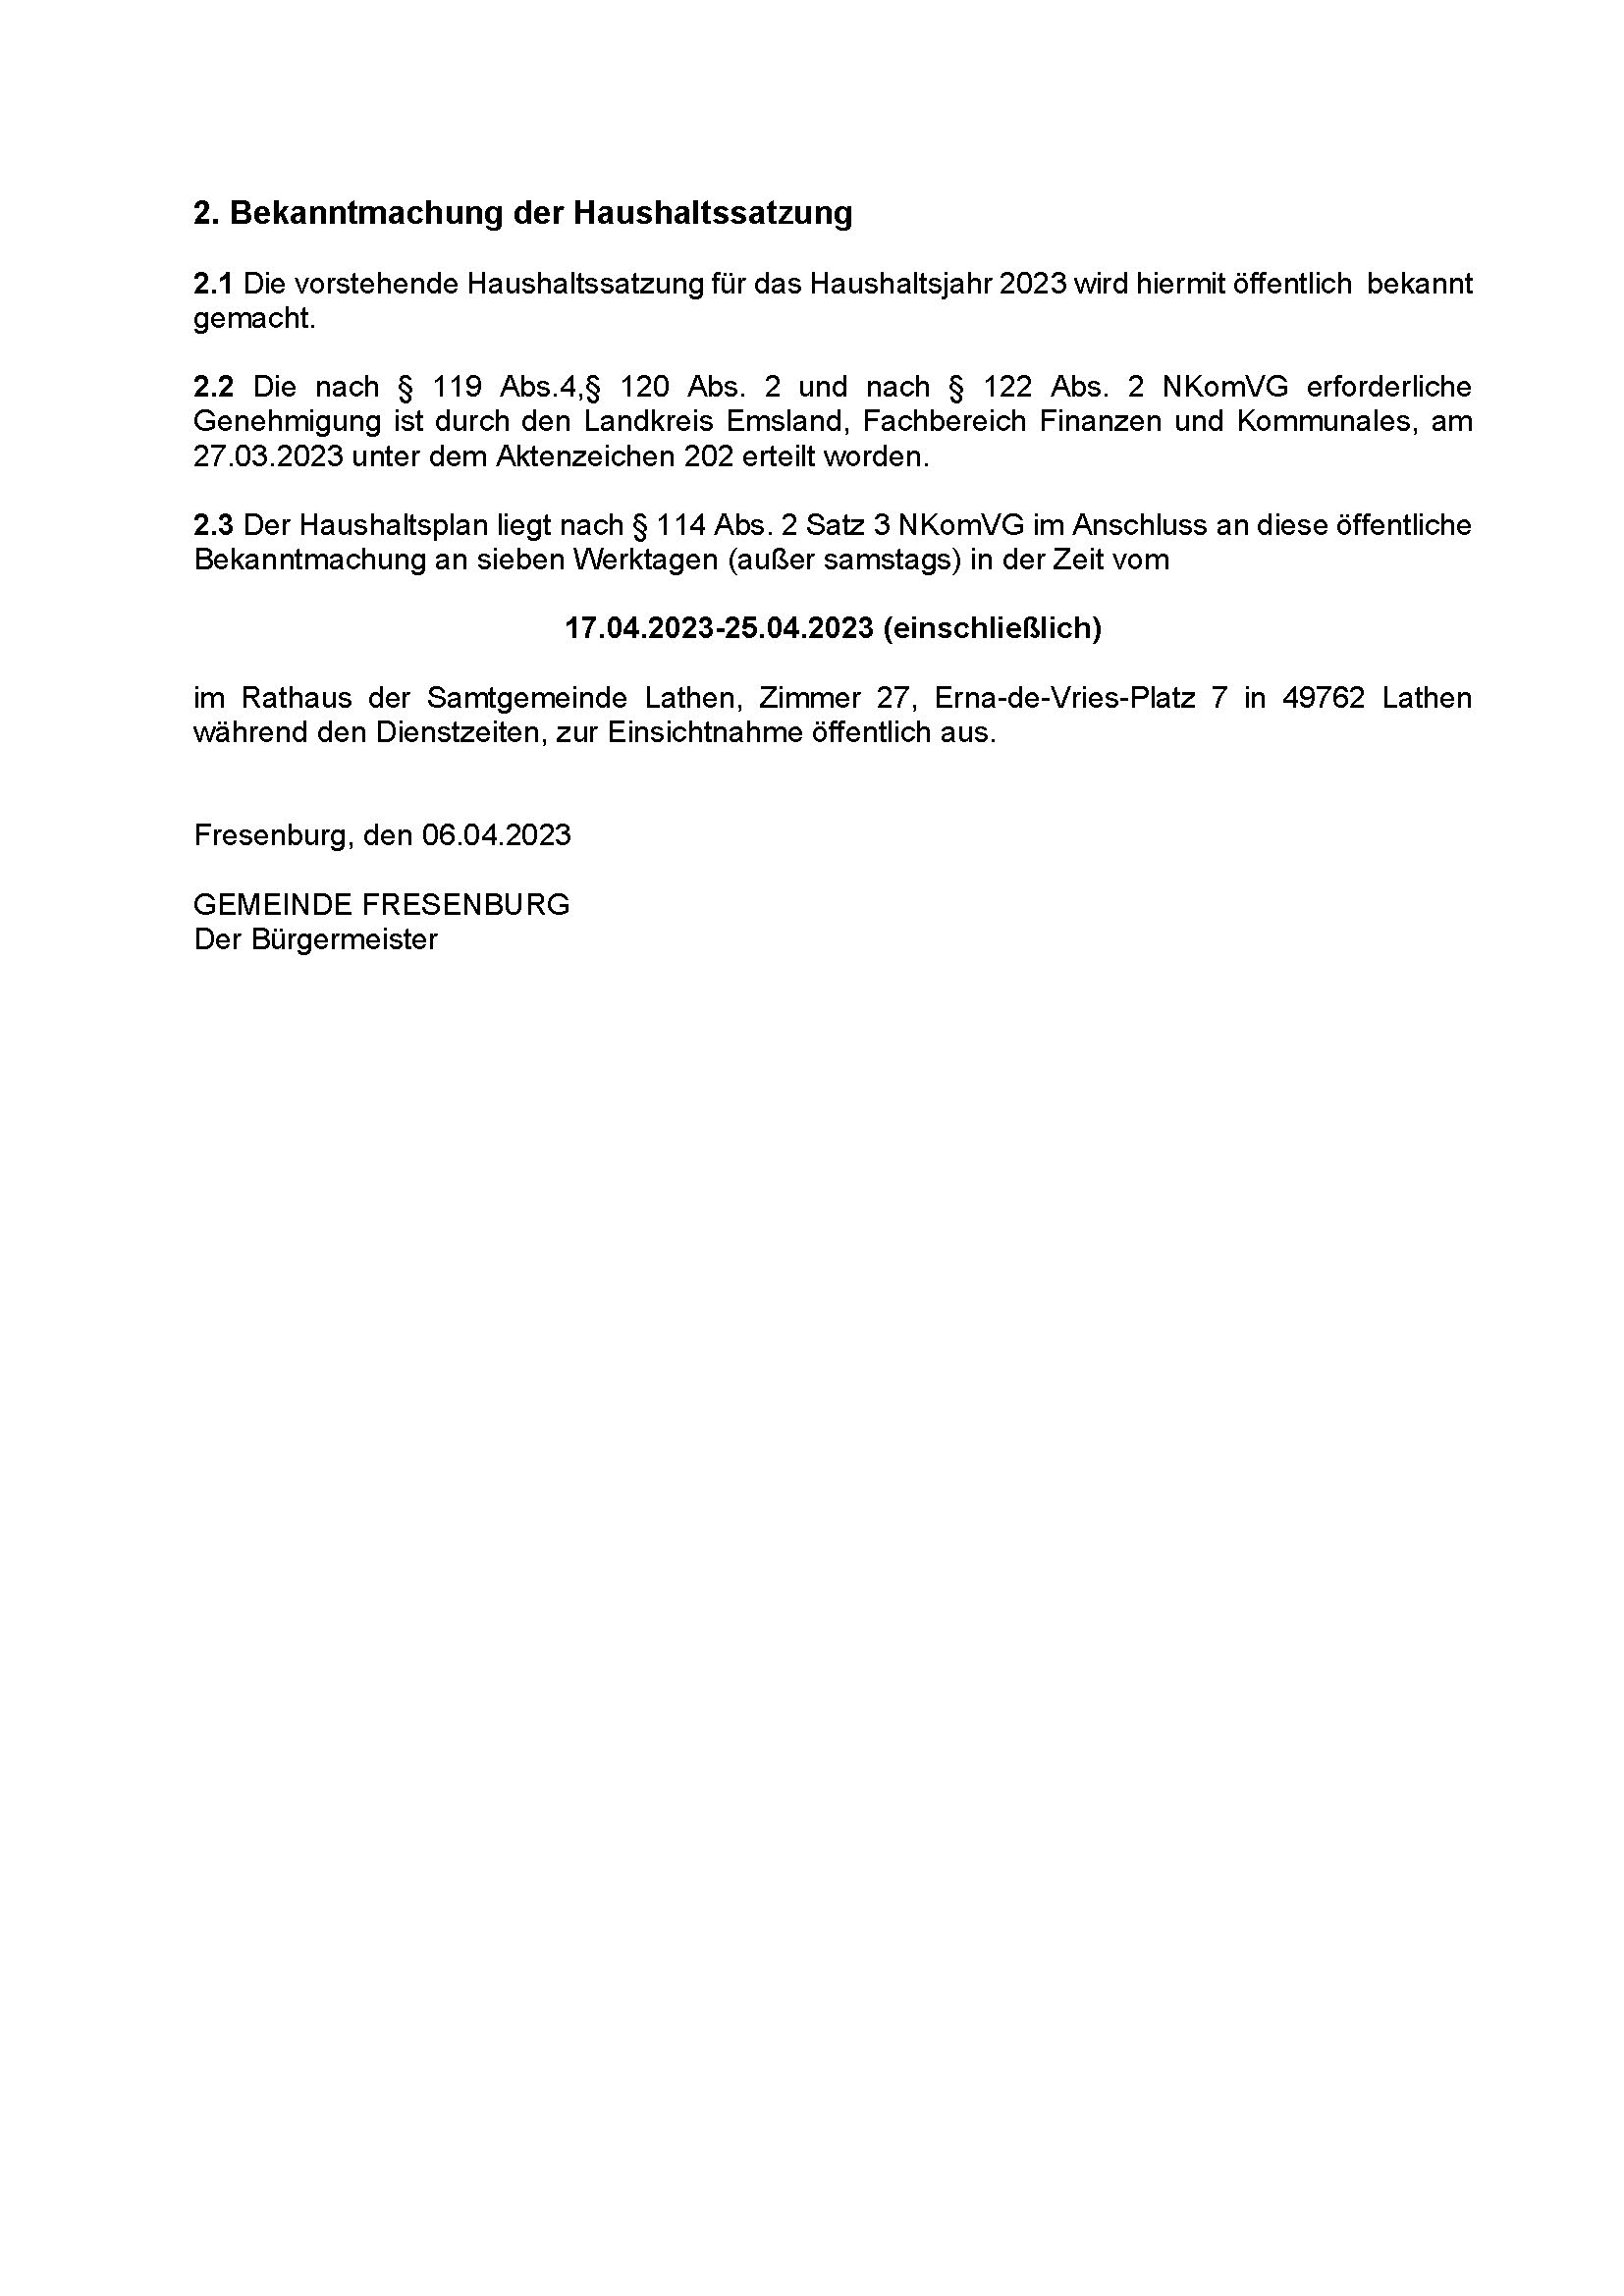 HHS Gem. Fresenburg 2023 - Bekanntmachung_Seite_3